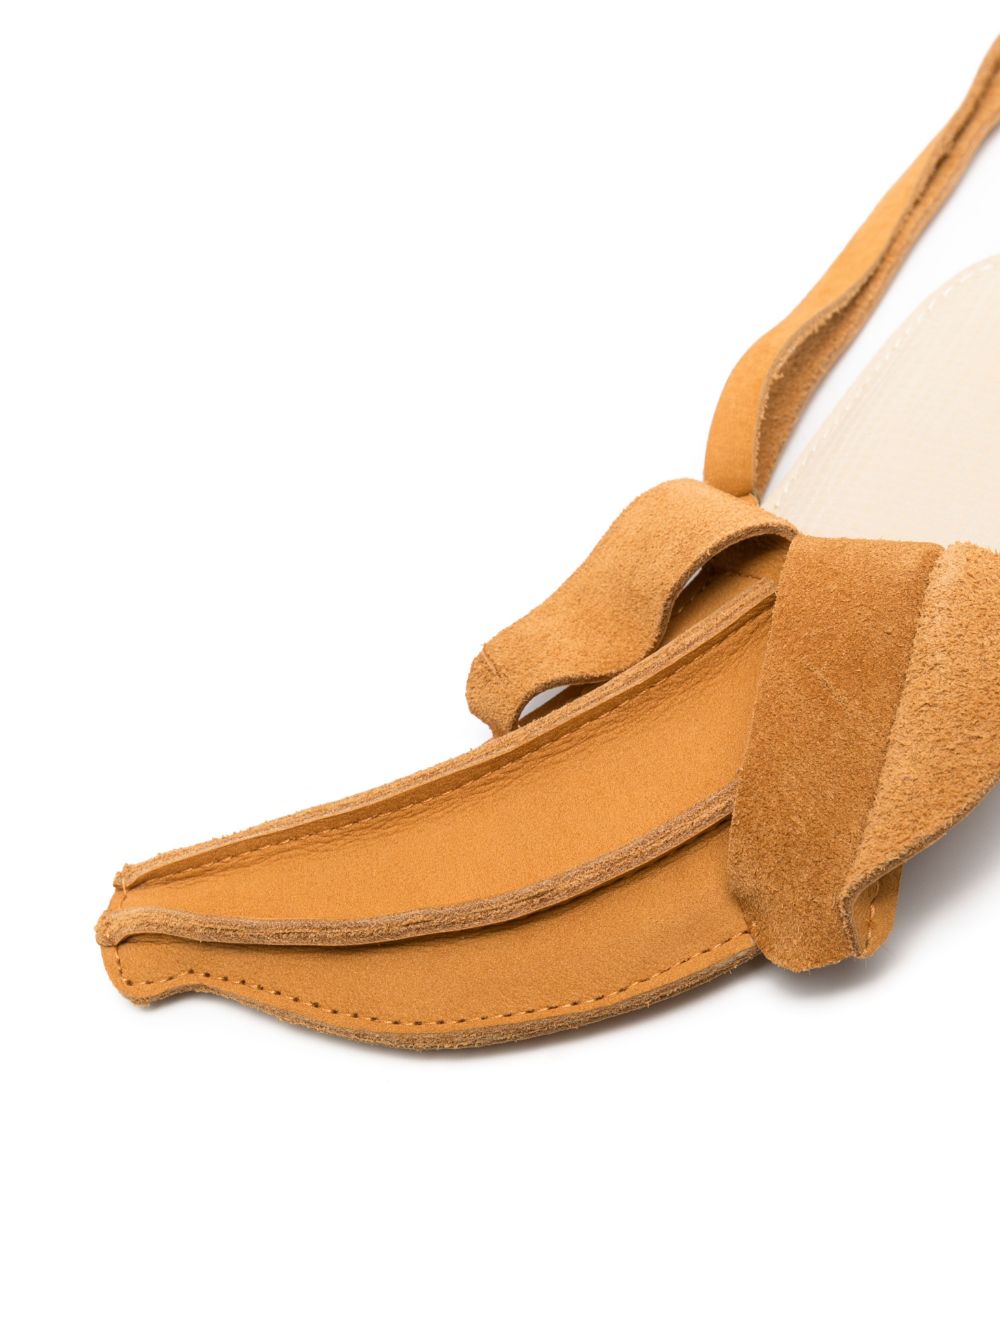 Donsje Schoudertas in banaanvorm - Bruin